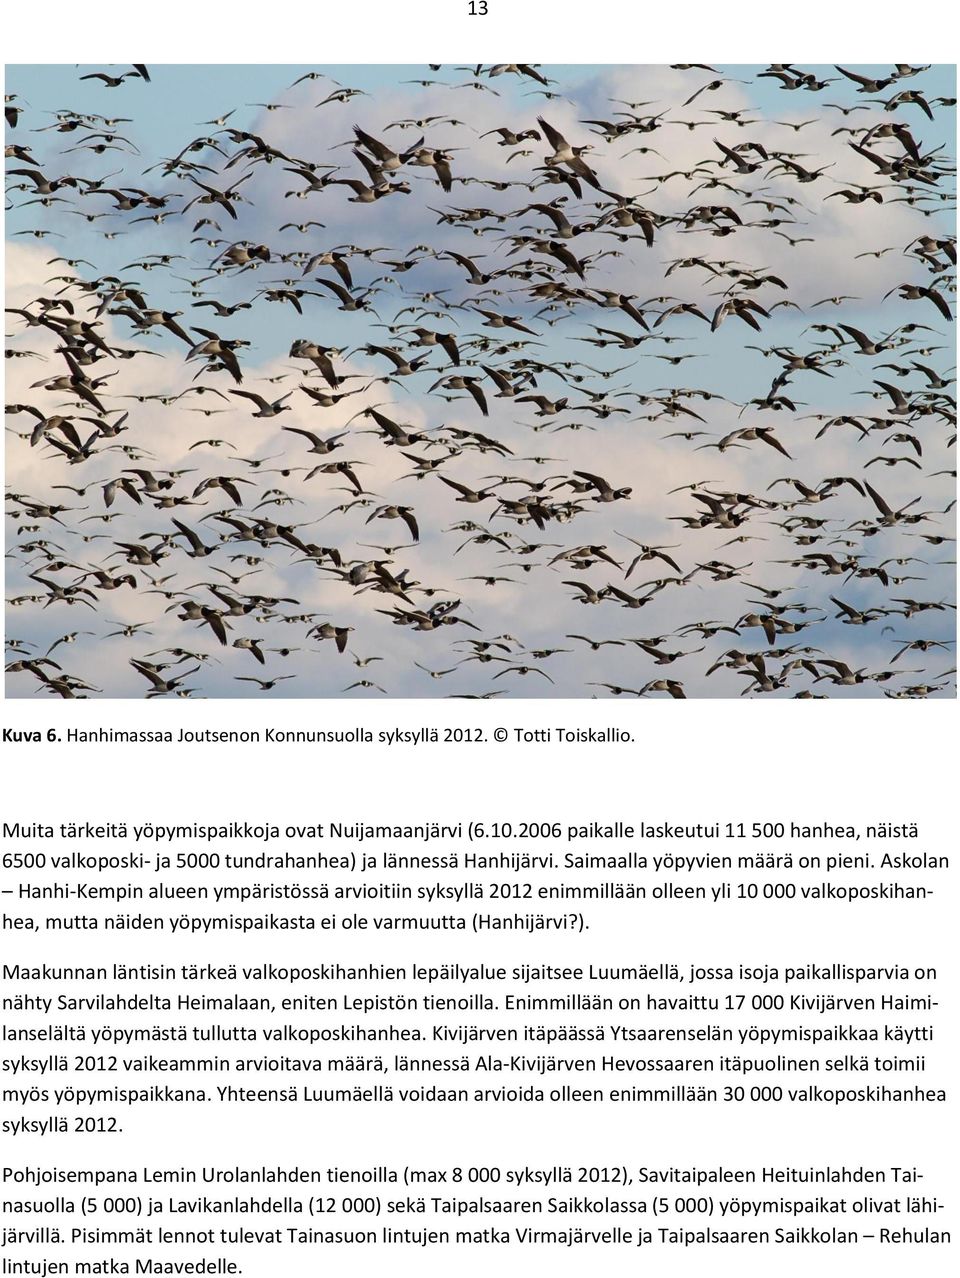 Askolan Hanhi-Kempin alueen ympäristössä arvioitiin syksyllä 2012 enimmillään olleen yli 10 000 valkoposkihanhea, mutta näiden yöpymispaikasta ei ole varmuutta (Hanhijärvi?).